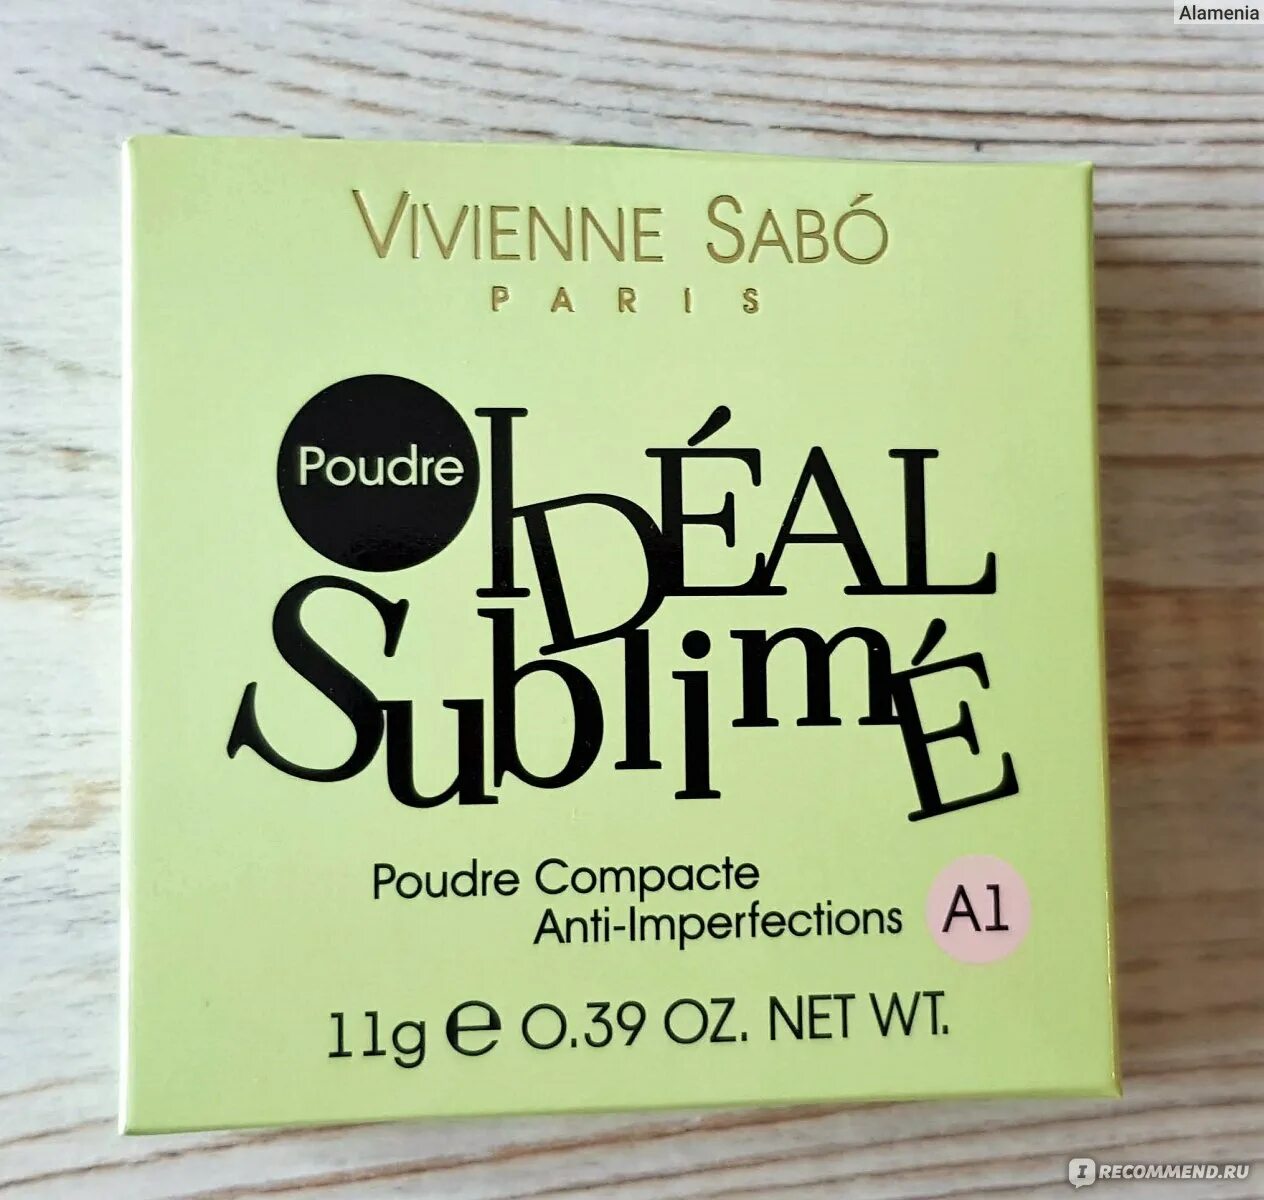 Пудра сабо отзывы. Пудра Vivienne Sabo ideal Sublime a1. Пудра Вивьен сабо ideal Sublime. Пудра Вивьен сабо идеал сублим оттенки. Vivienne Sabo ideal Sublime а1.